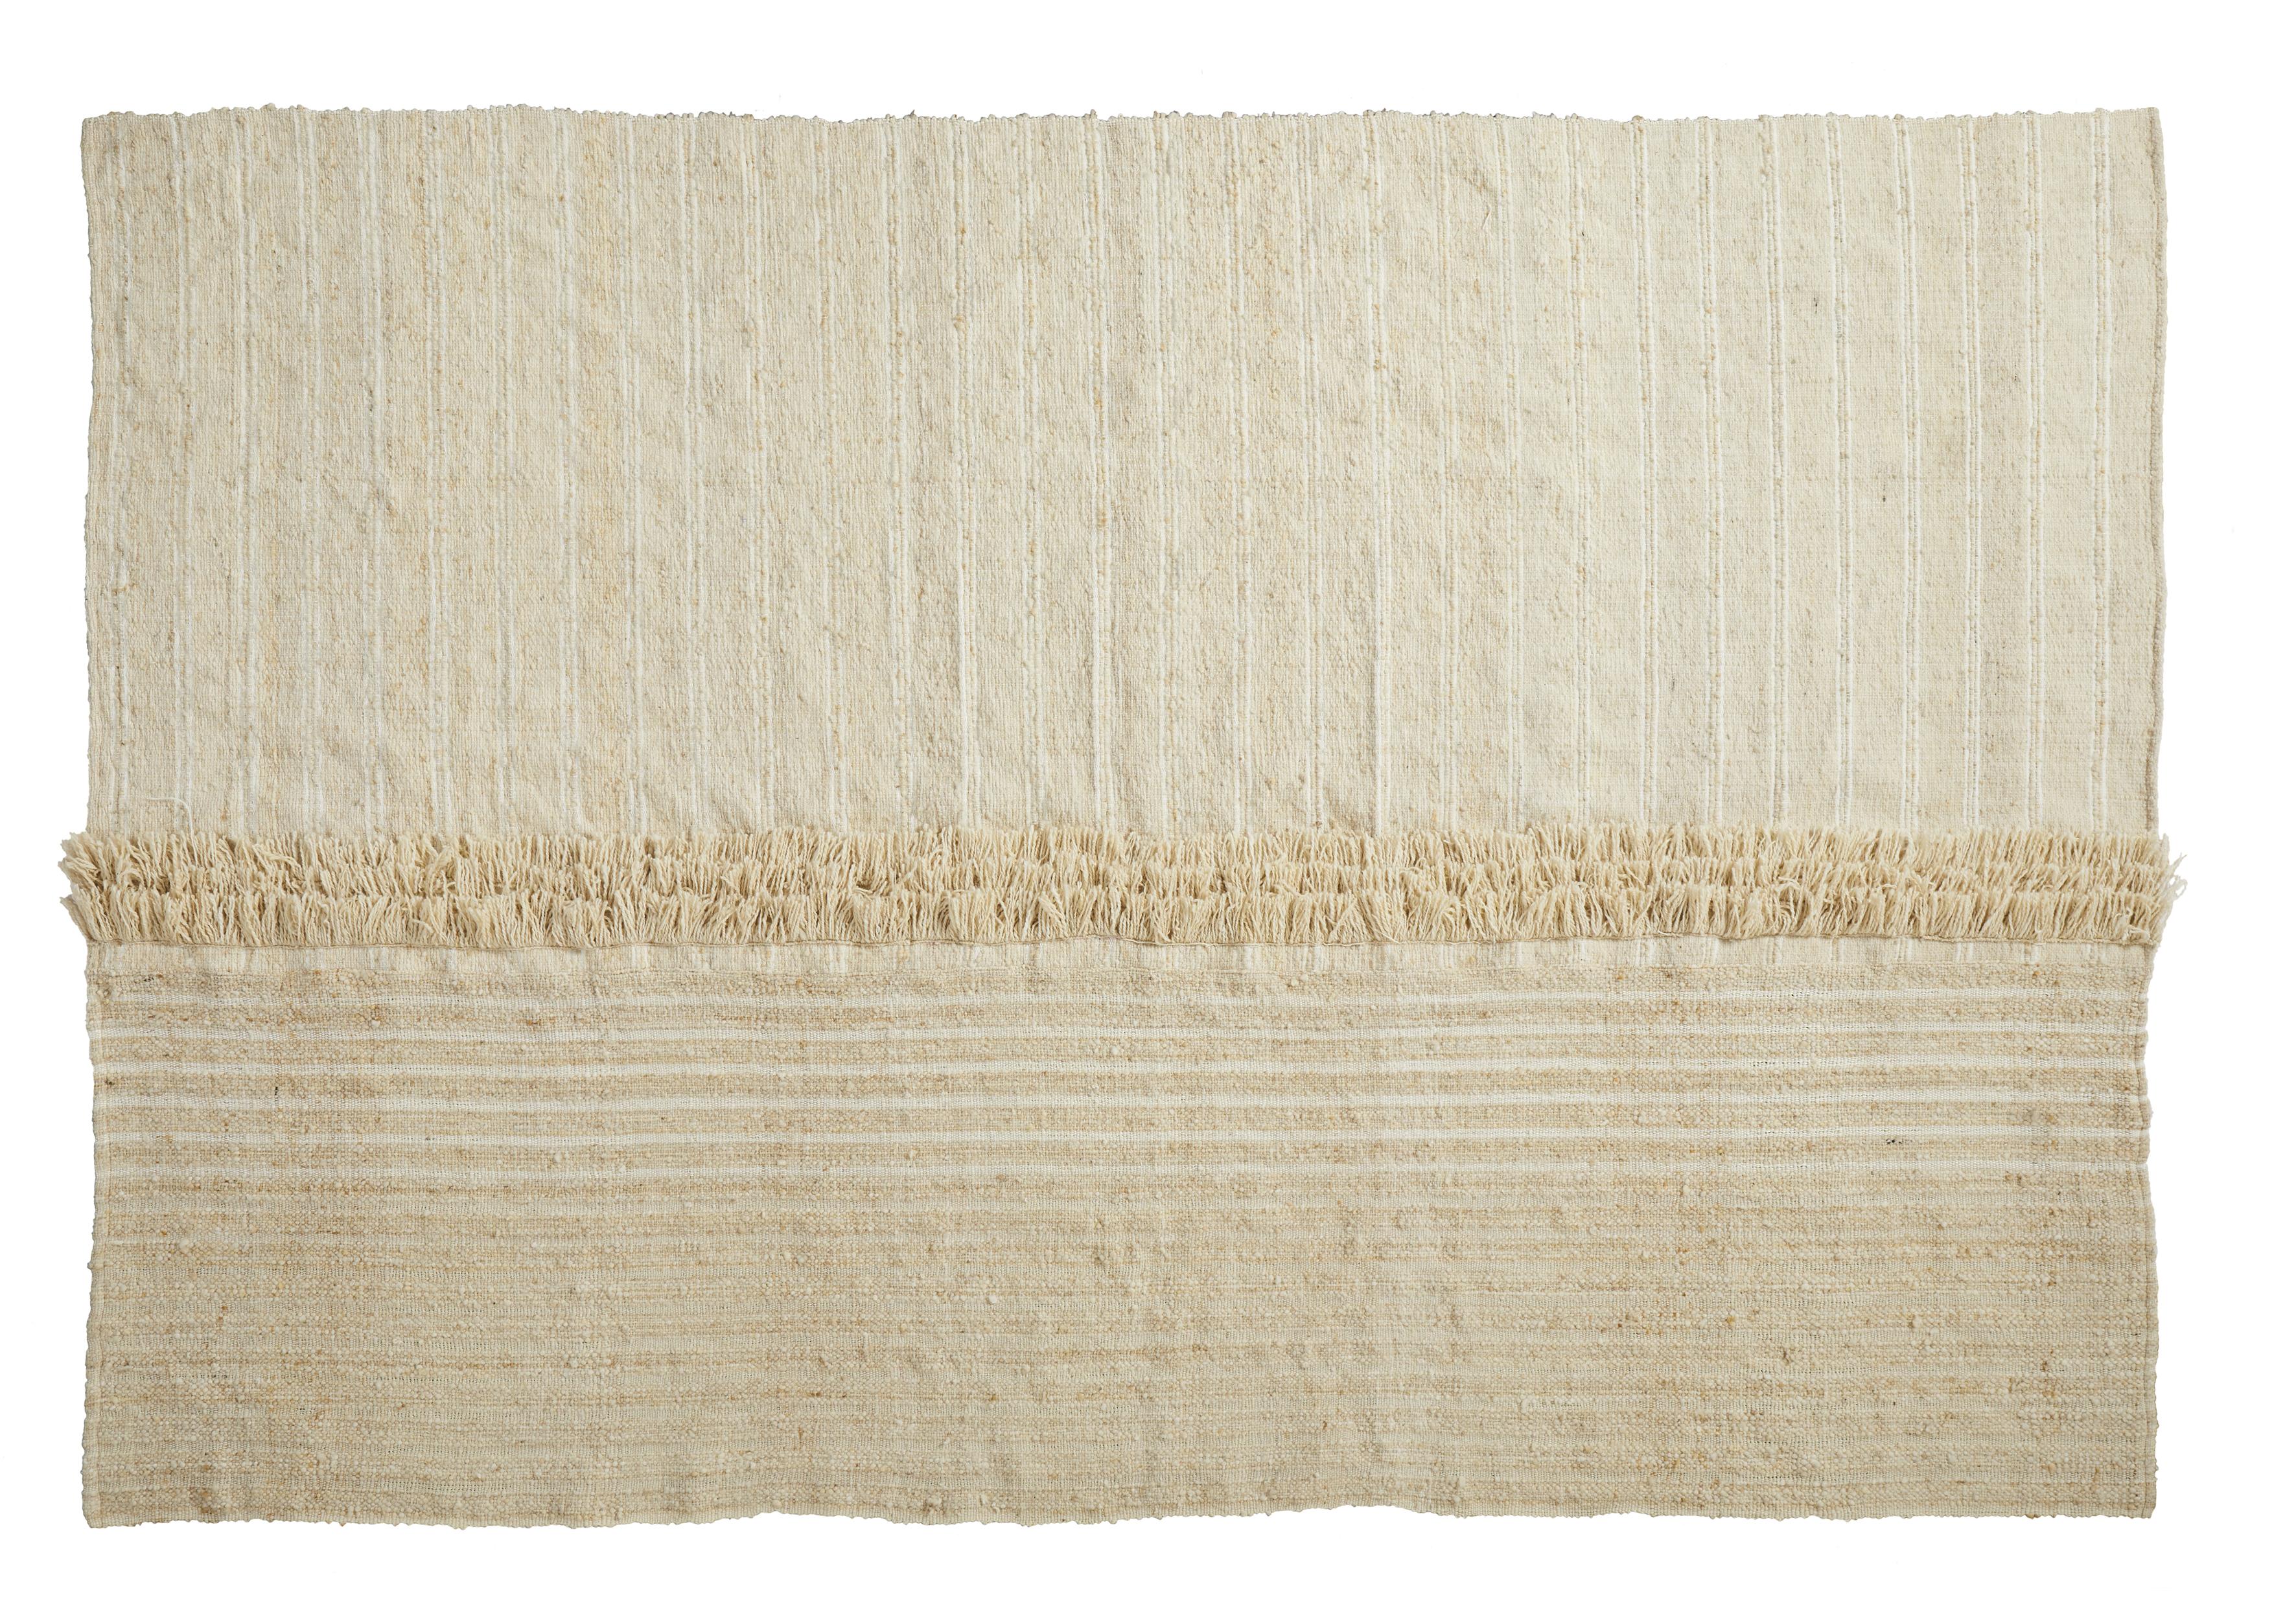 Linea 2 großer subas-Teppich von Sebastian Herkner
MATERIALIEN: 100% natürliche Schurwolle. 
Technik: Natürlich gefärbte Fasern. Handgewebt in Kolumbien.
Abmessungen: B 310 x L 420 cm 
Erhältlich in den Farben: karo, linea 1, linea 2, moton,